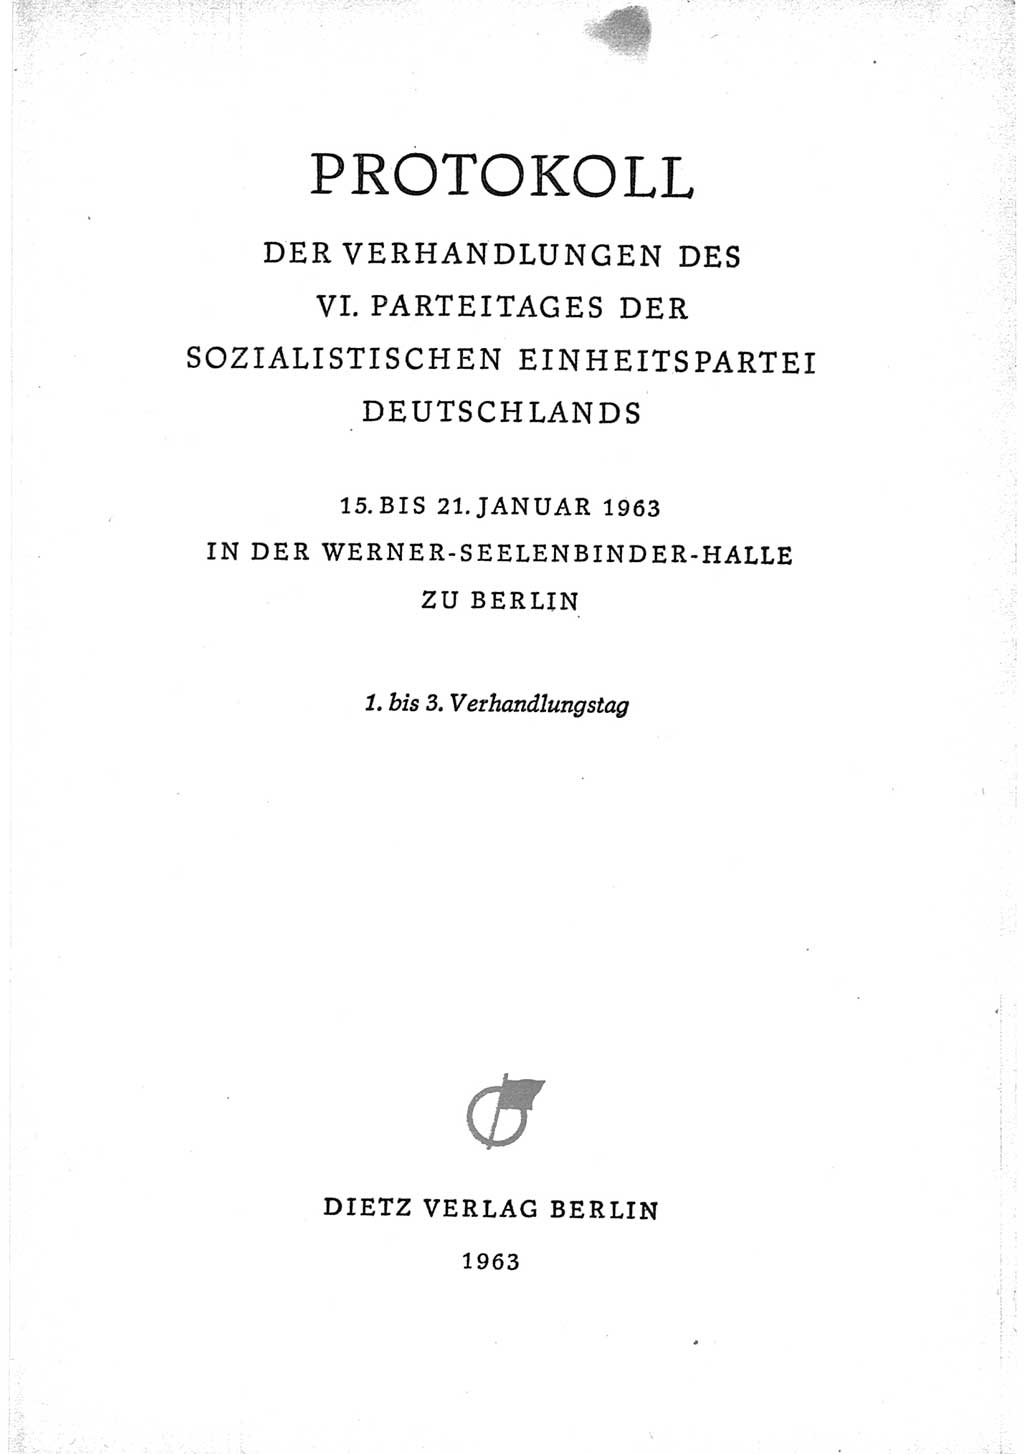 Protokoll der Verhandlungen des Ⅵ. Parteitages der Sozialistischen Einheitspartei Deutschlands (SED) [Deutsche Demokratische Republik (DDR)] 1963, Band Ⅰ, Seite 3 (Prot. Verh. Ⅵ. PT SED DDR 1963, Bd. Ⅰ, S. 3)